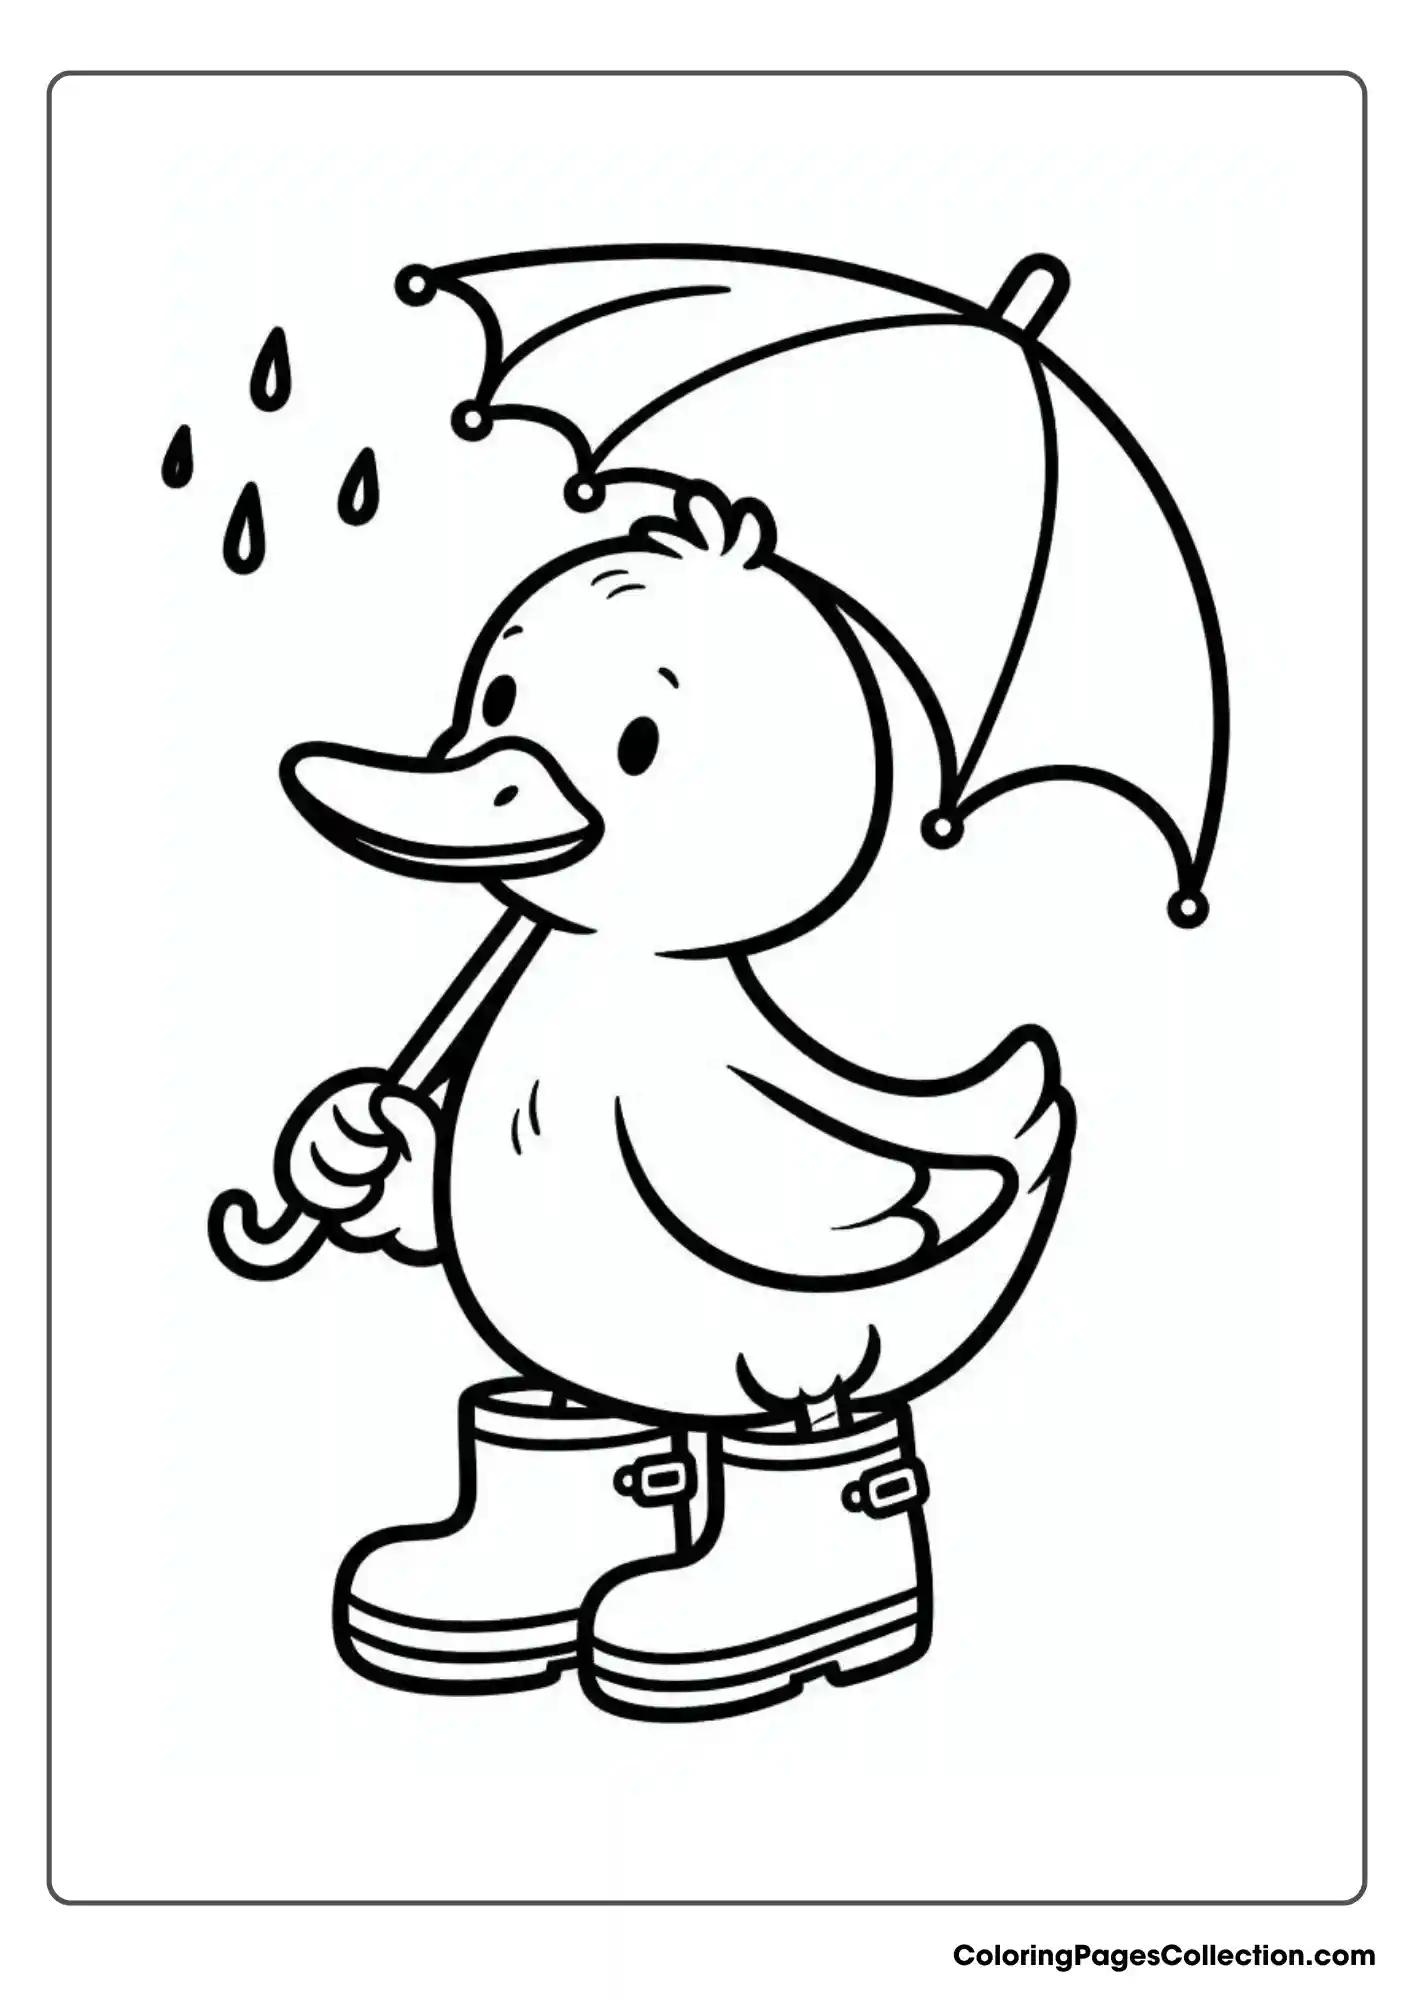 Duck Holding An Umbrella